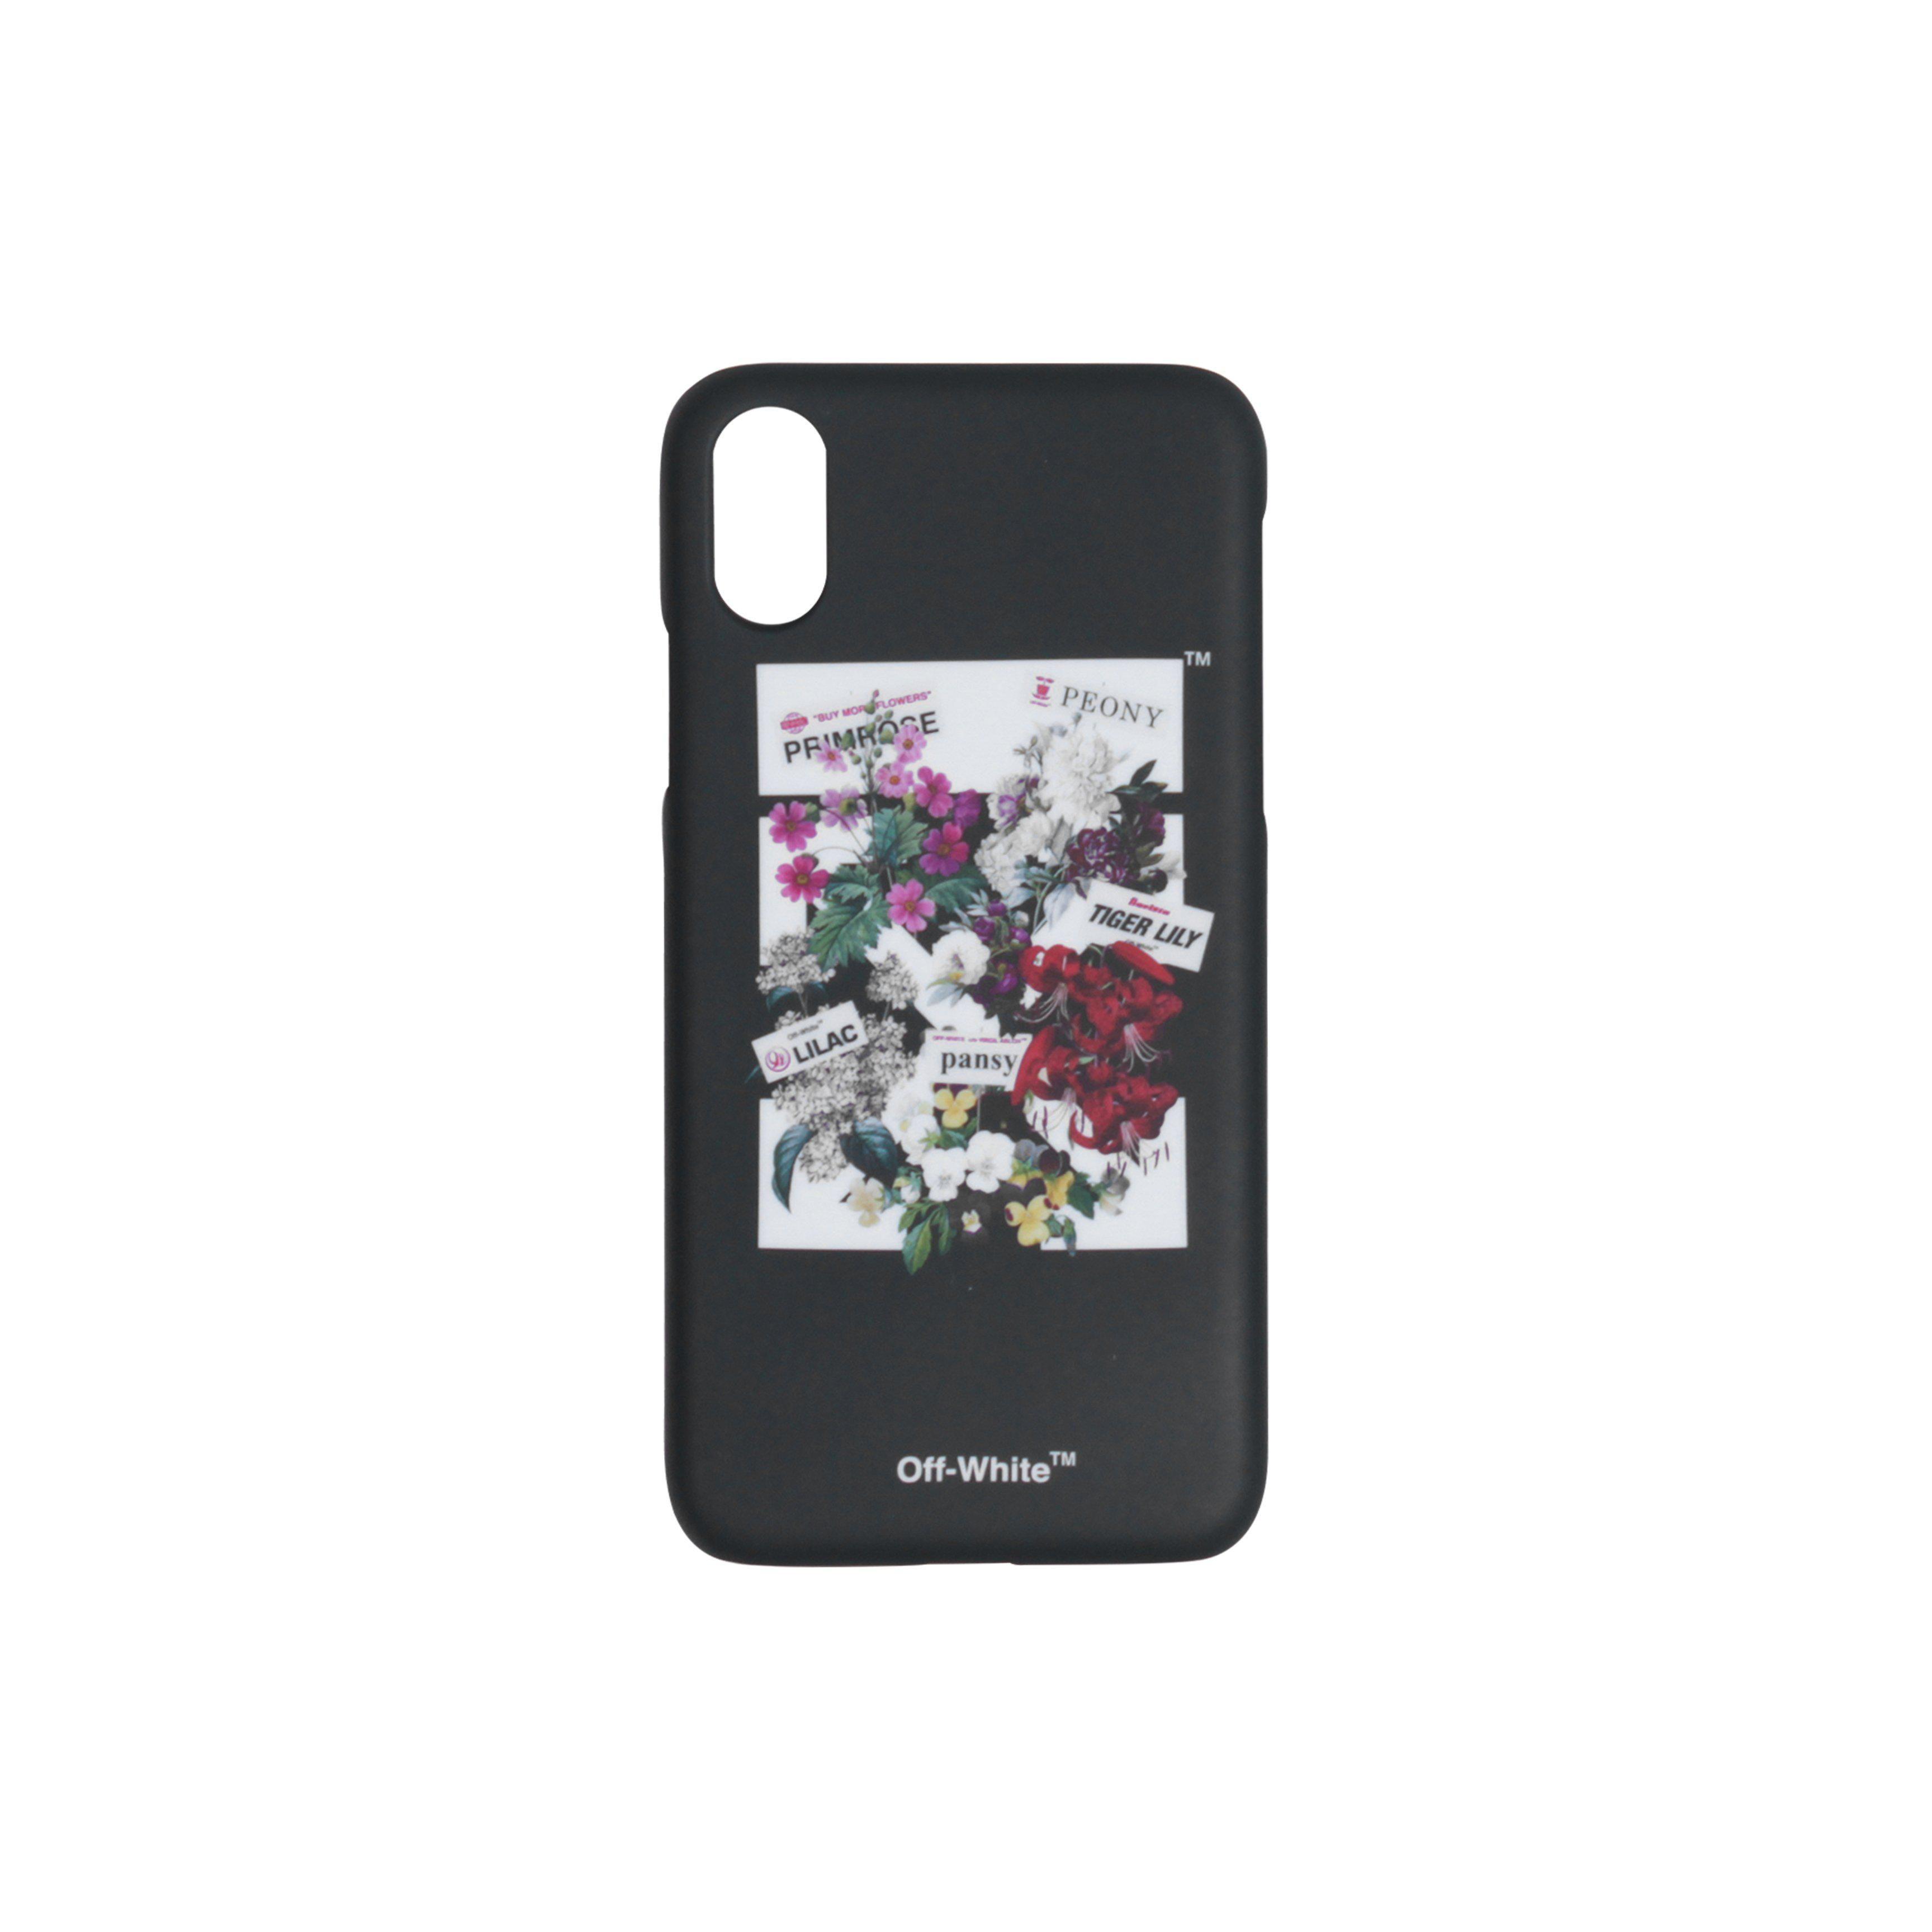 Flower Off White Virgil Logo - Lyst - Off-White c/o Virgil Abloh Flower Shop Iphone X Case in Black